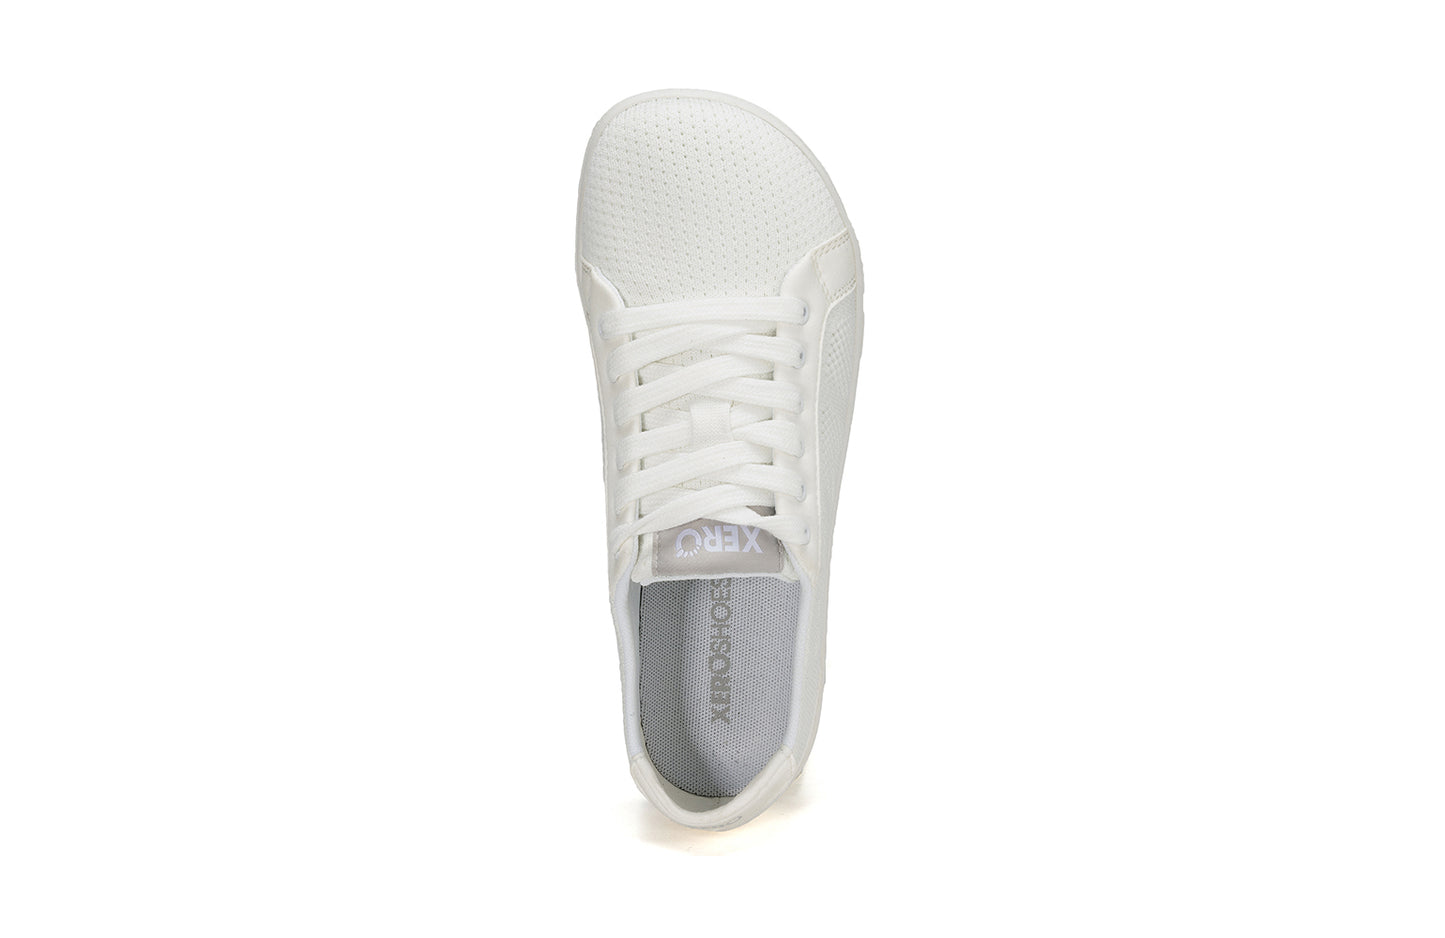 Xero Shoes - Dillon - White - Women's